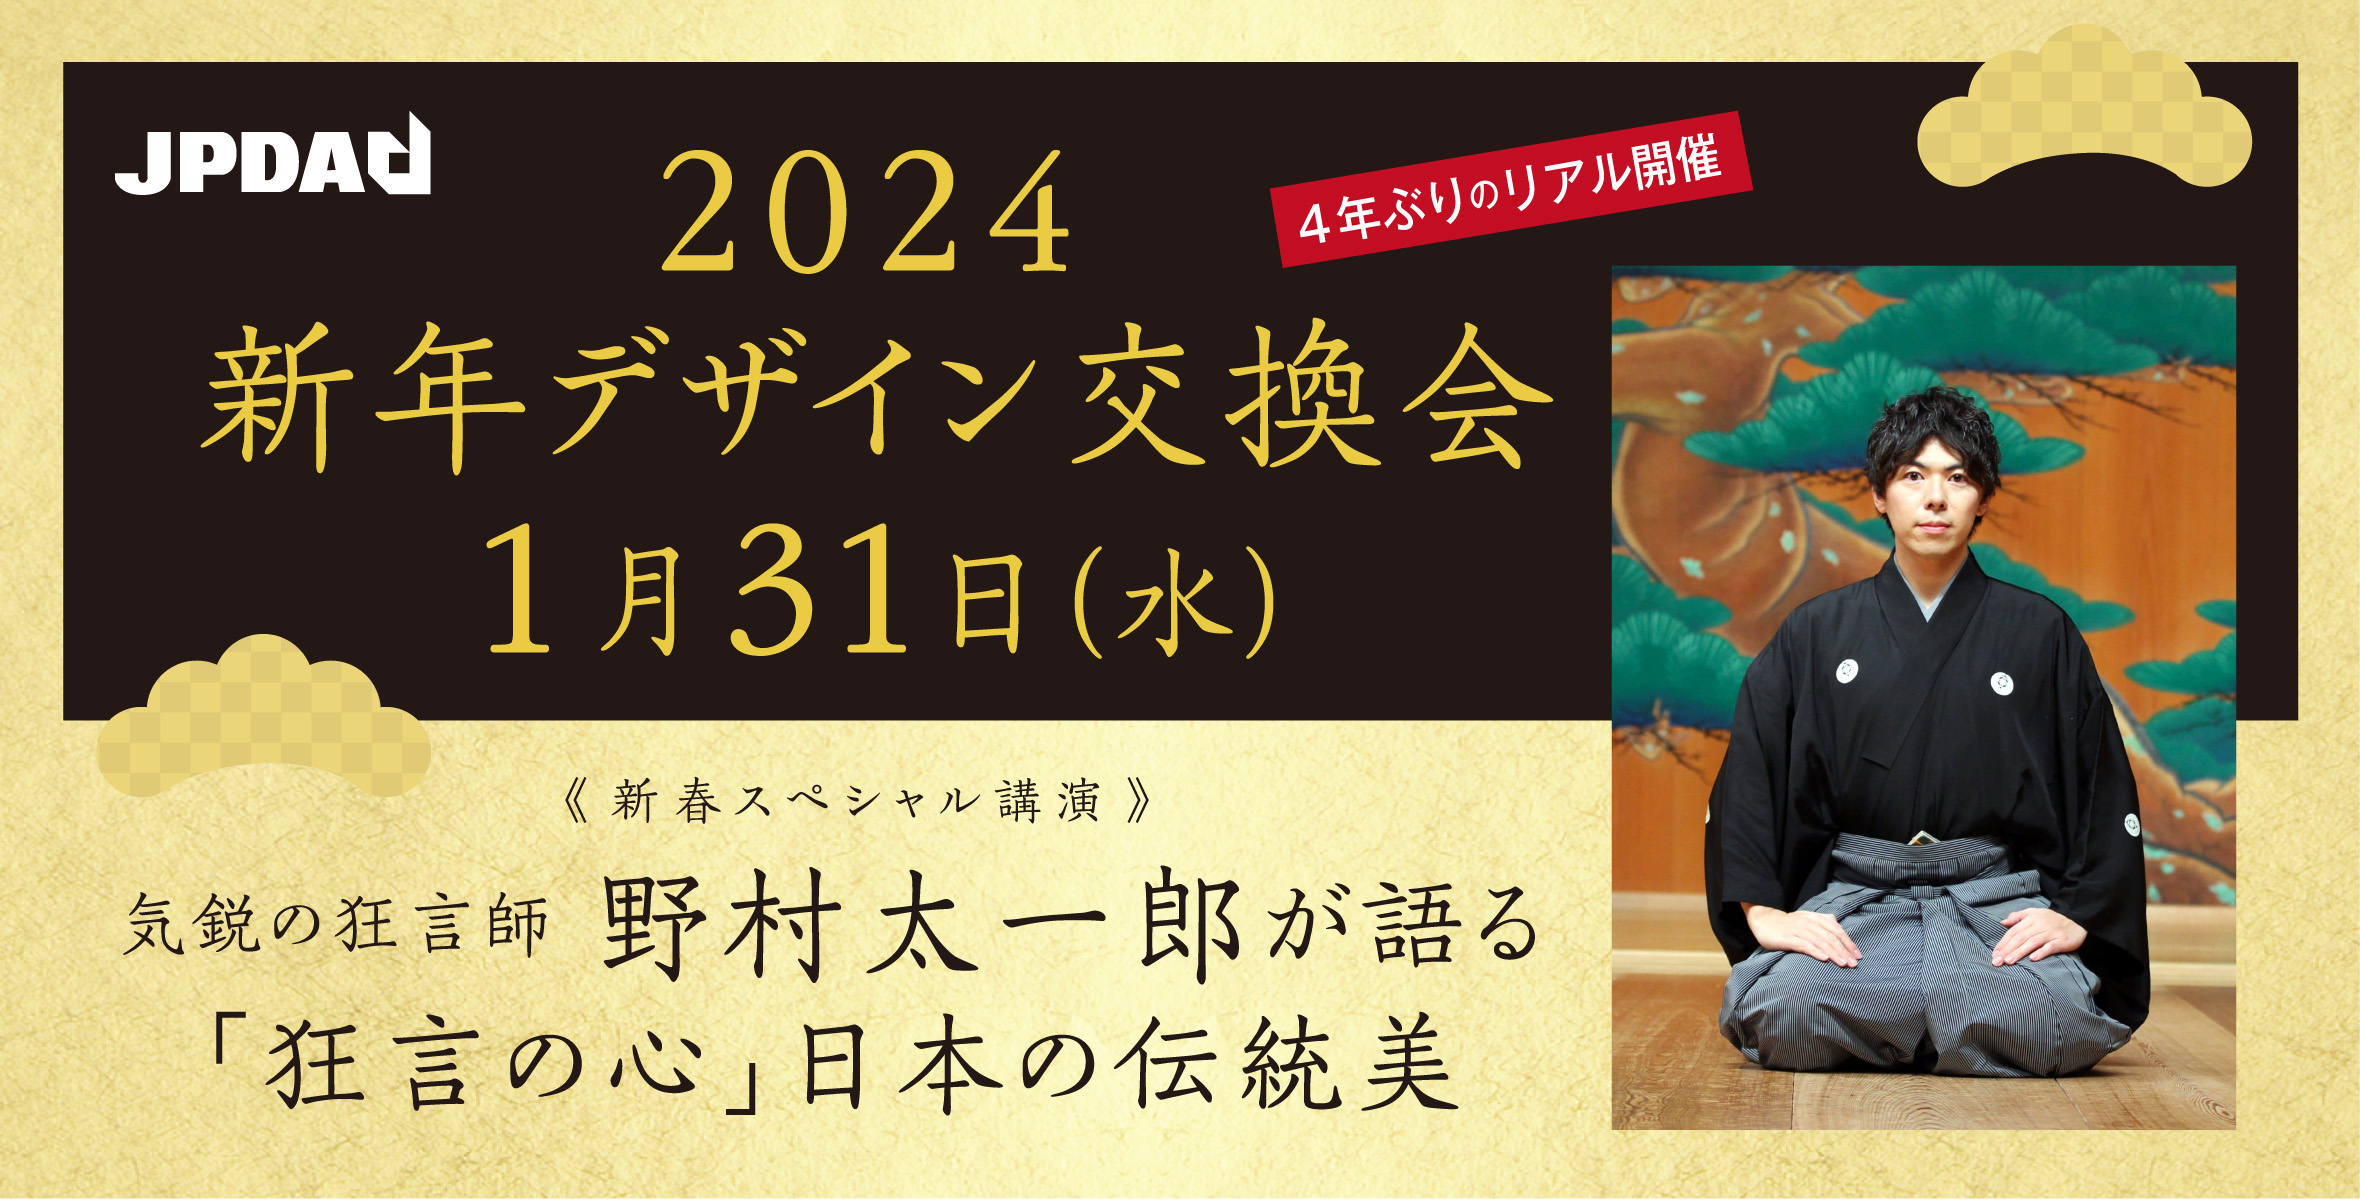 JPDA2024新年デザイン交換会のイメージ